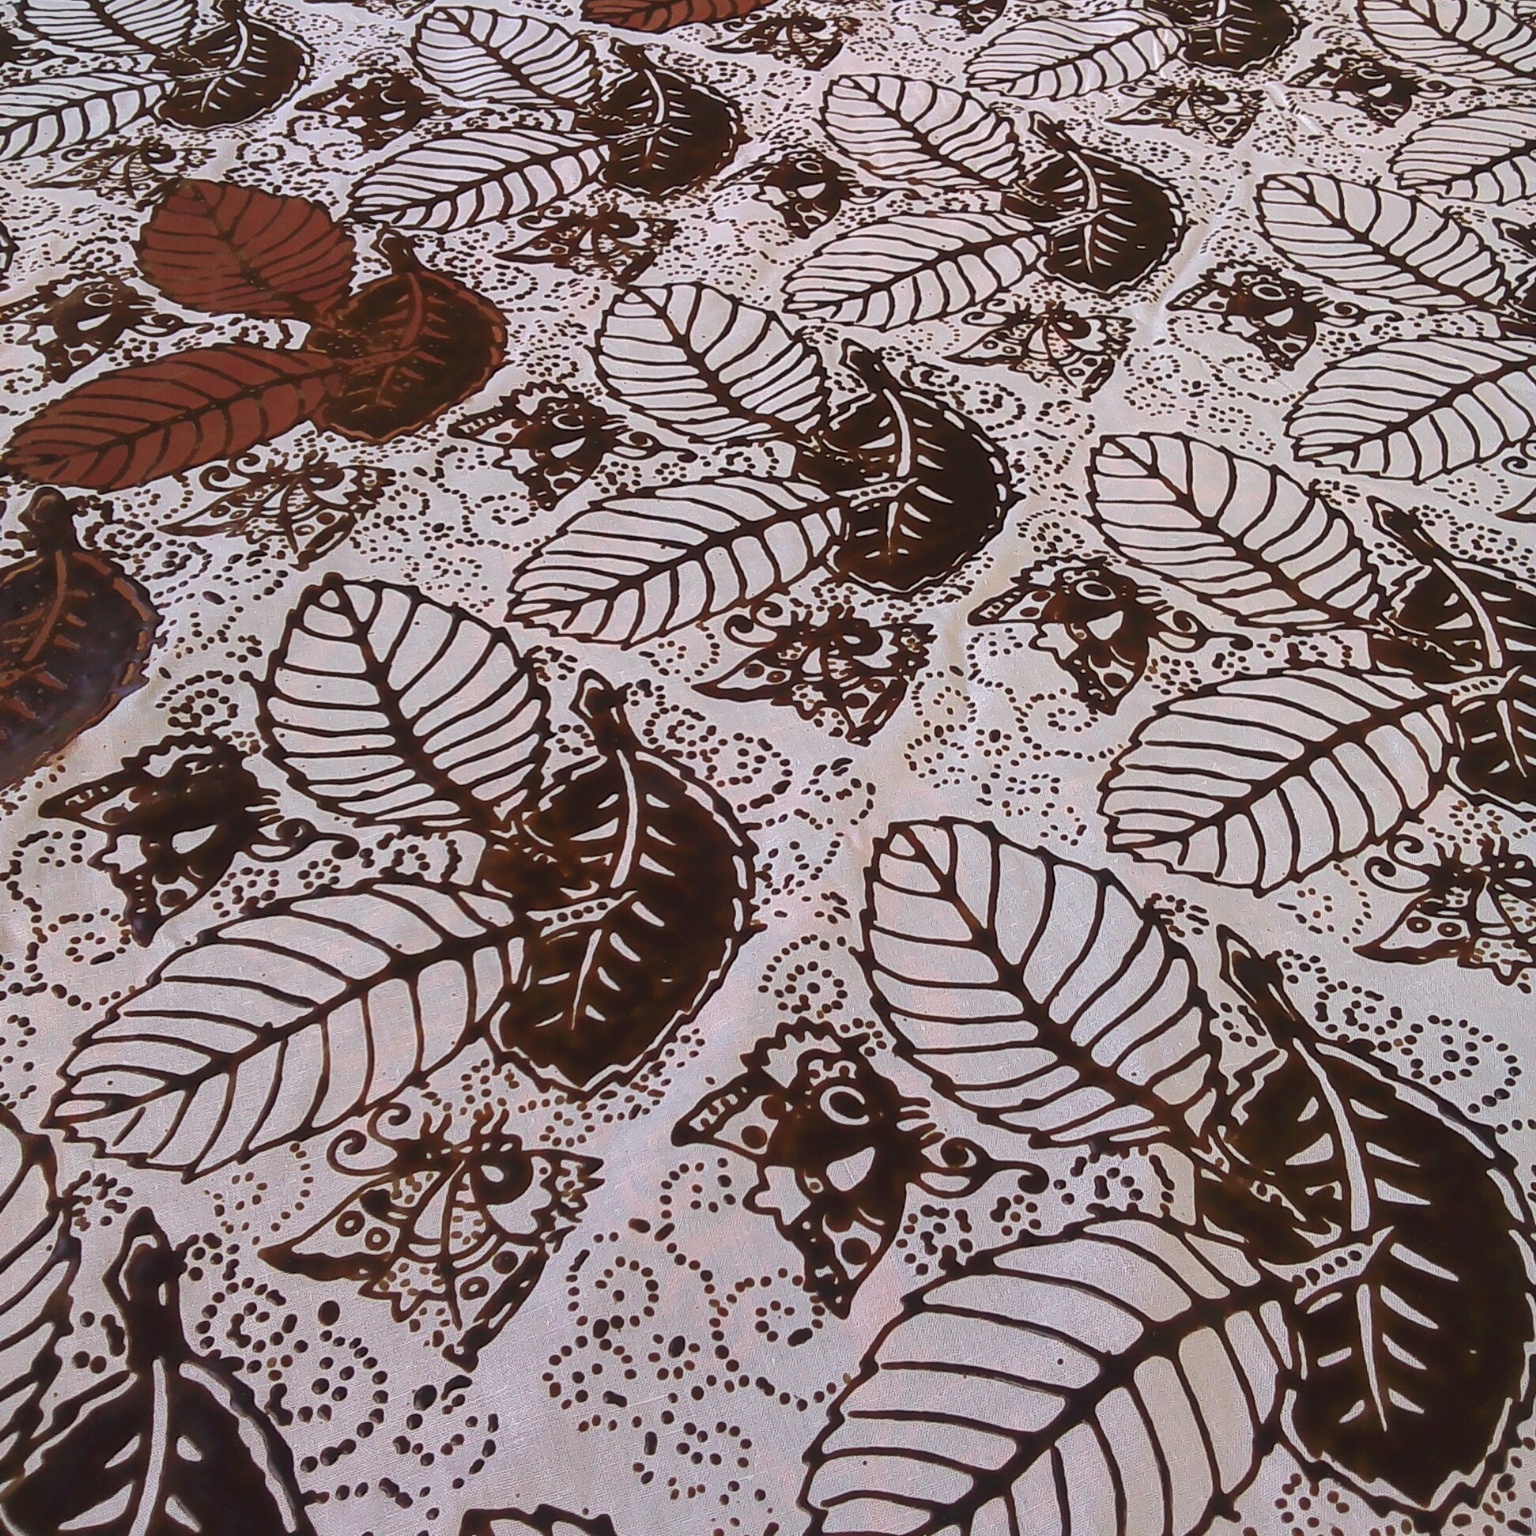 Gambar Batik Daun Sederhana Contoh Motif Batik | Images and Photos finder